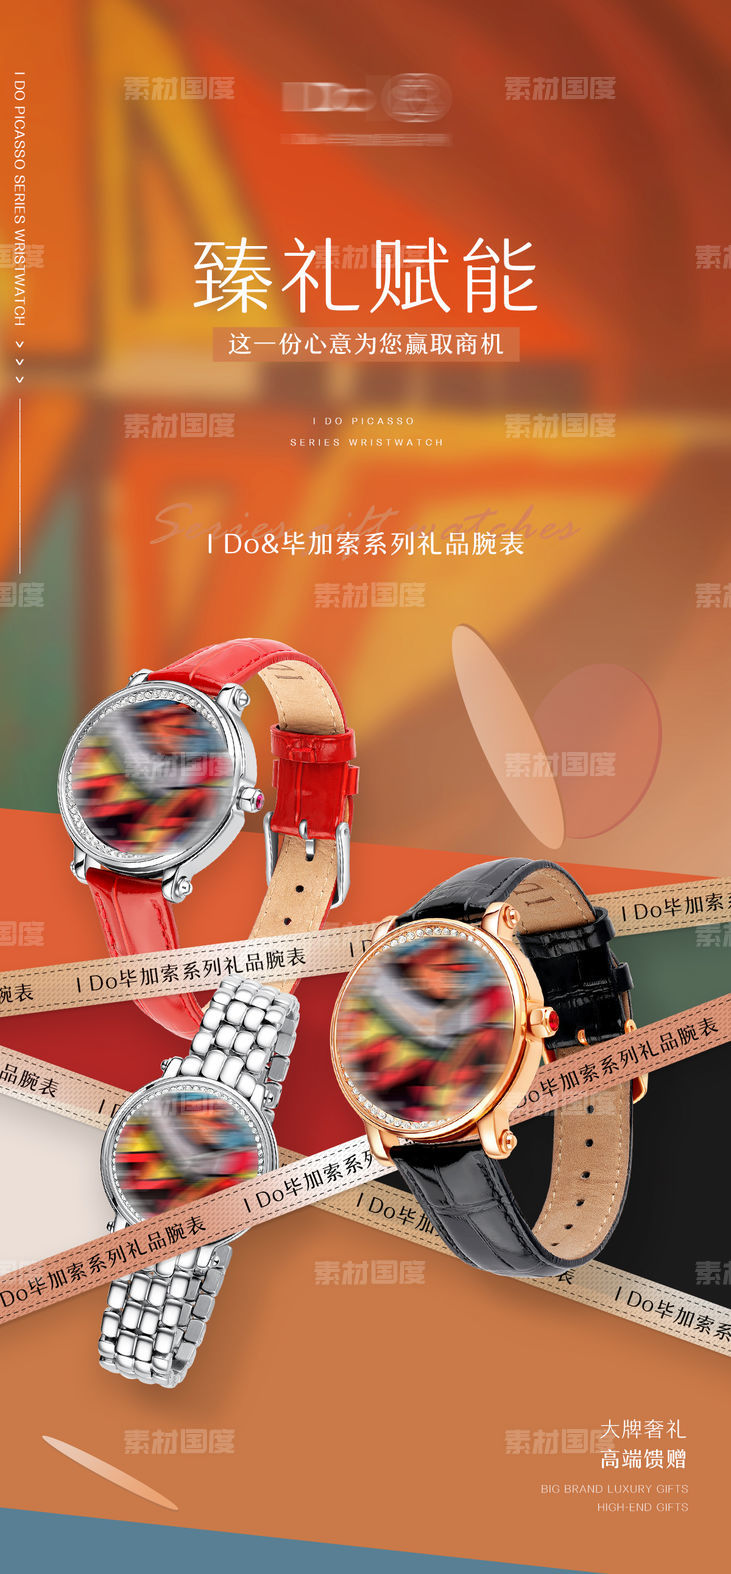 品牌腕表手表礼品宣传系列海报